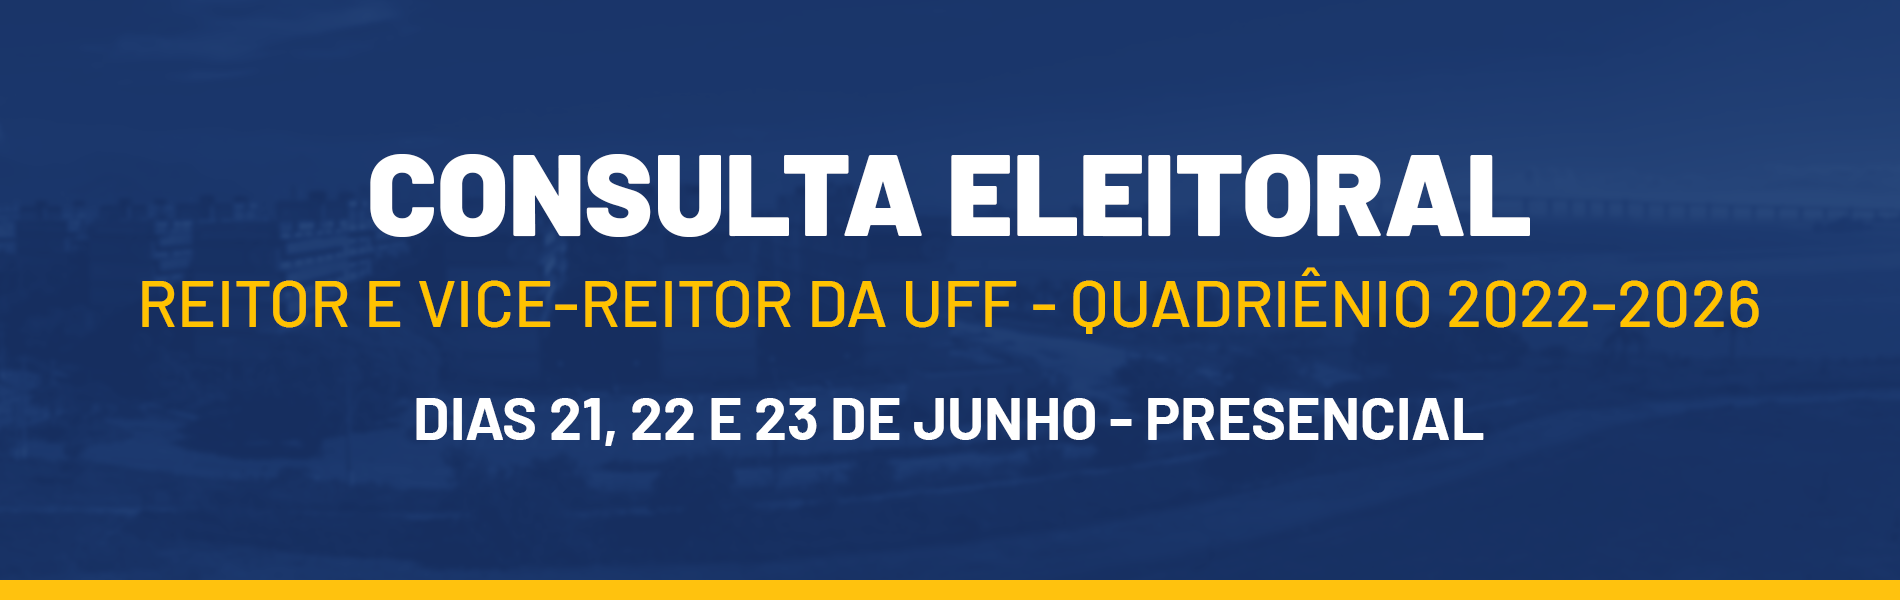 imagem colorida com fundo azul e nela está escrito "Consulta Eleitoral- reitor e vice-reitor da UFF quadriênio 2022-2026"